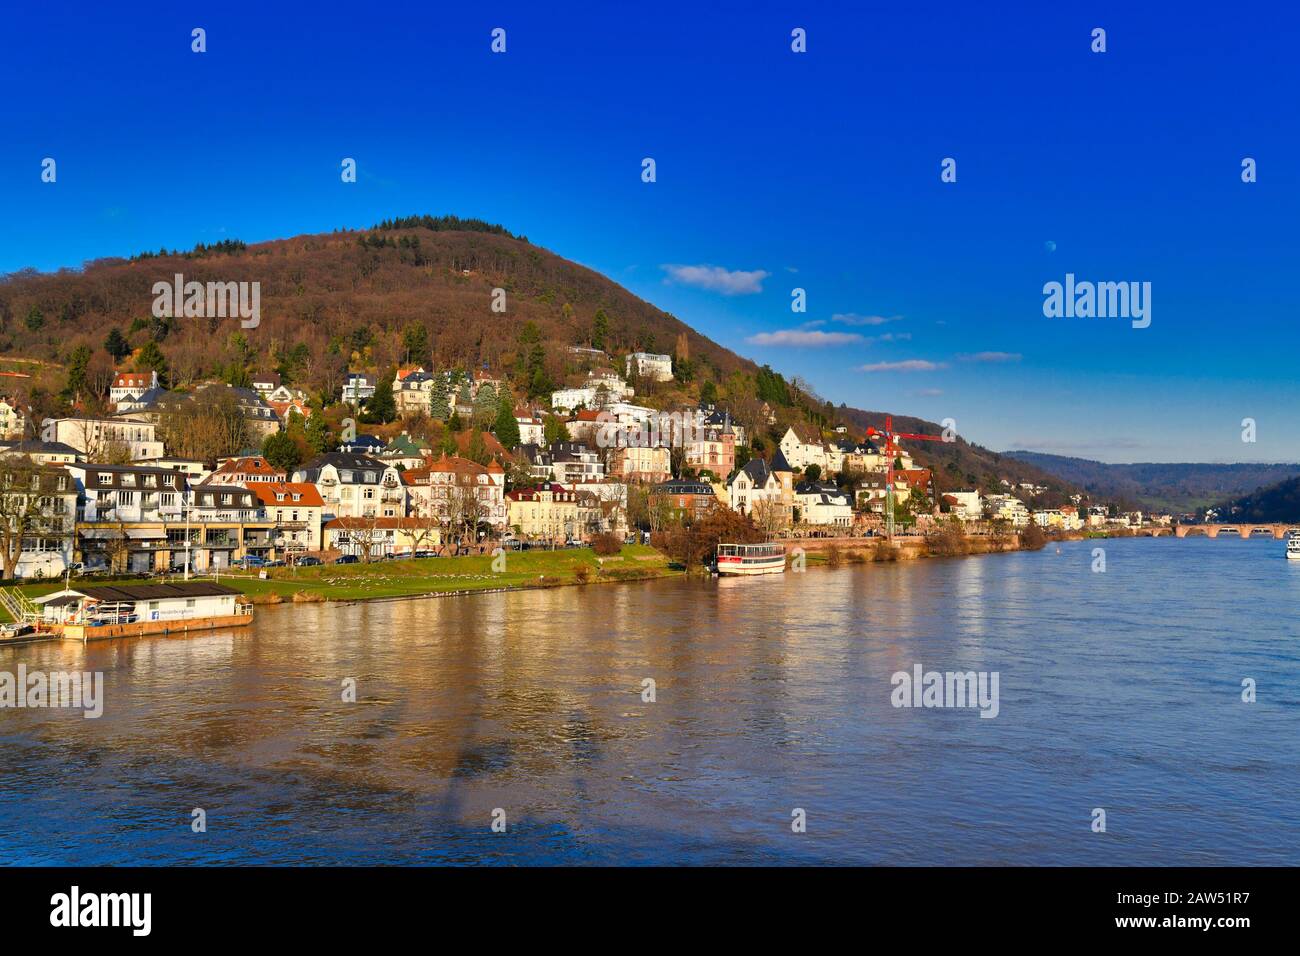 Blick auf den "Heiligenberg" genannten Waldwald mit historischen Herrenhäusern und neckarfluss in der Stadt Heidelberg in Deutschland, Blick von der Theodor-Heuss-Brücke Stockfoto